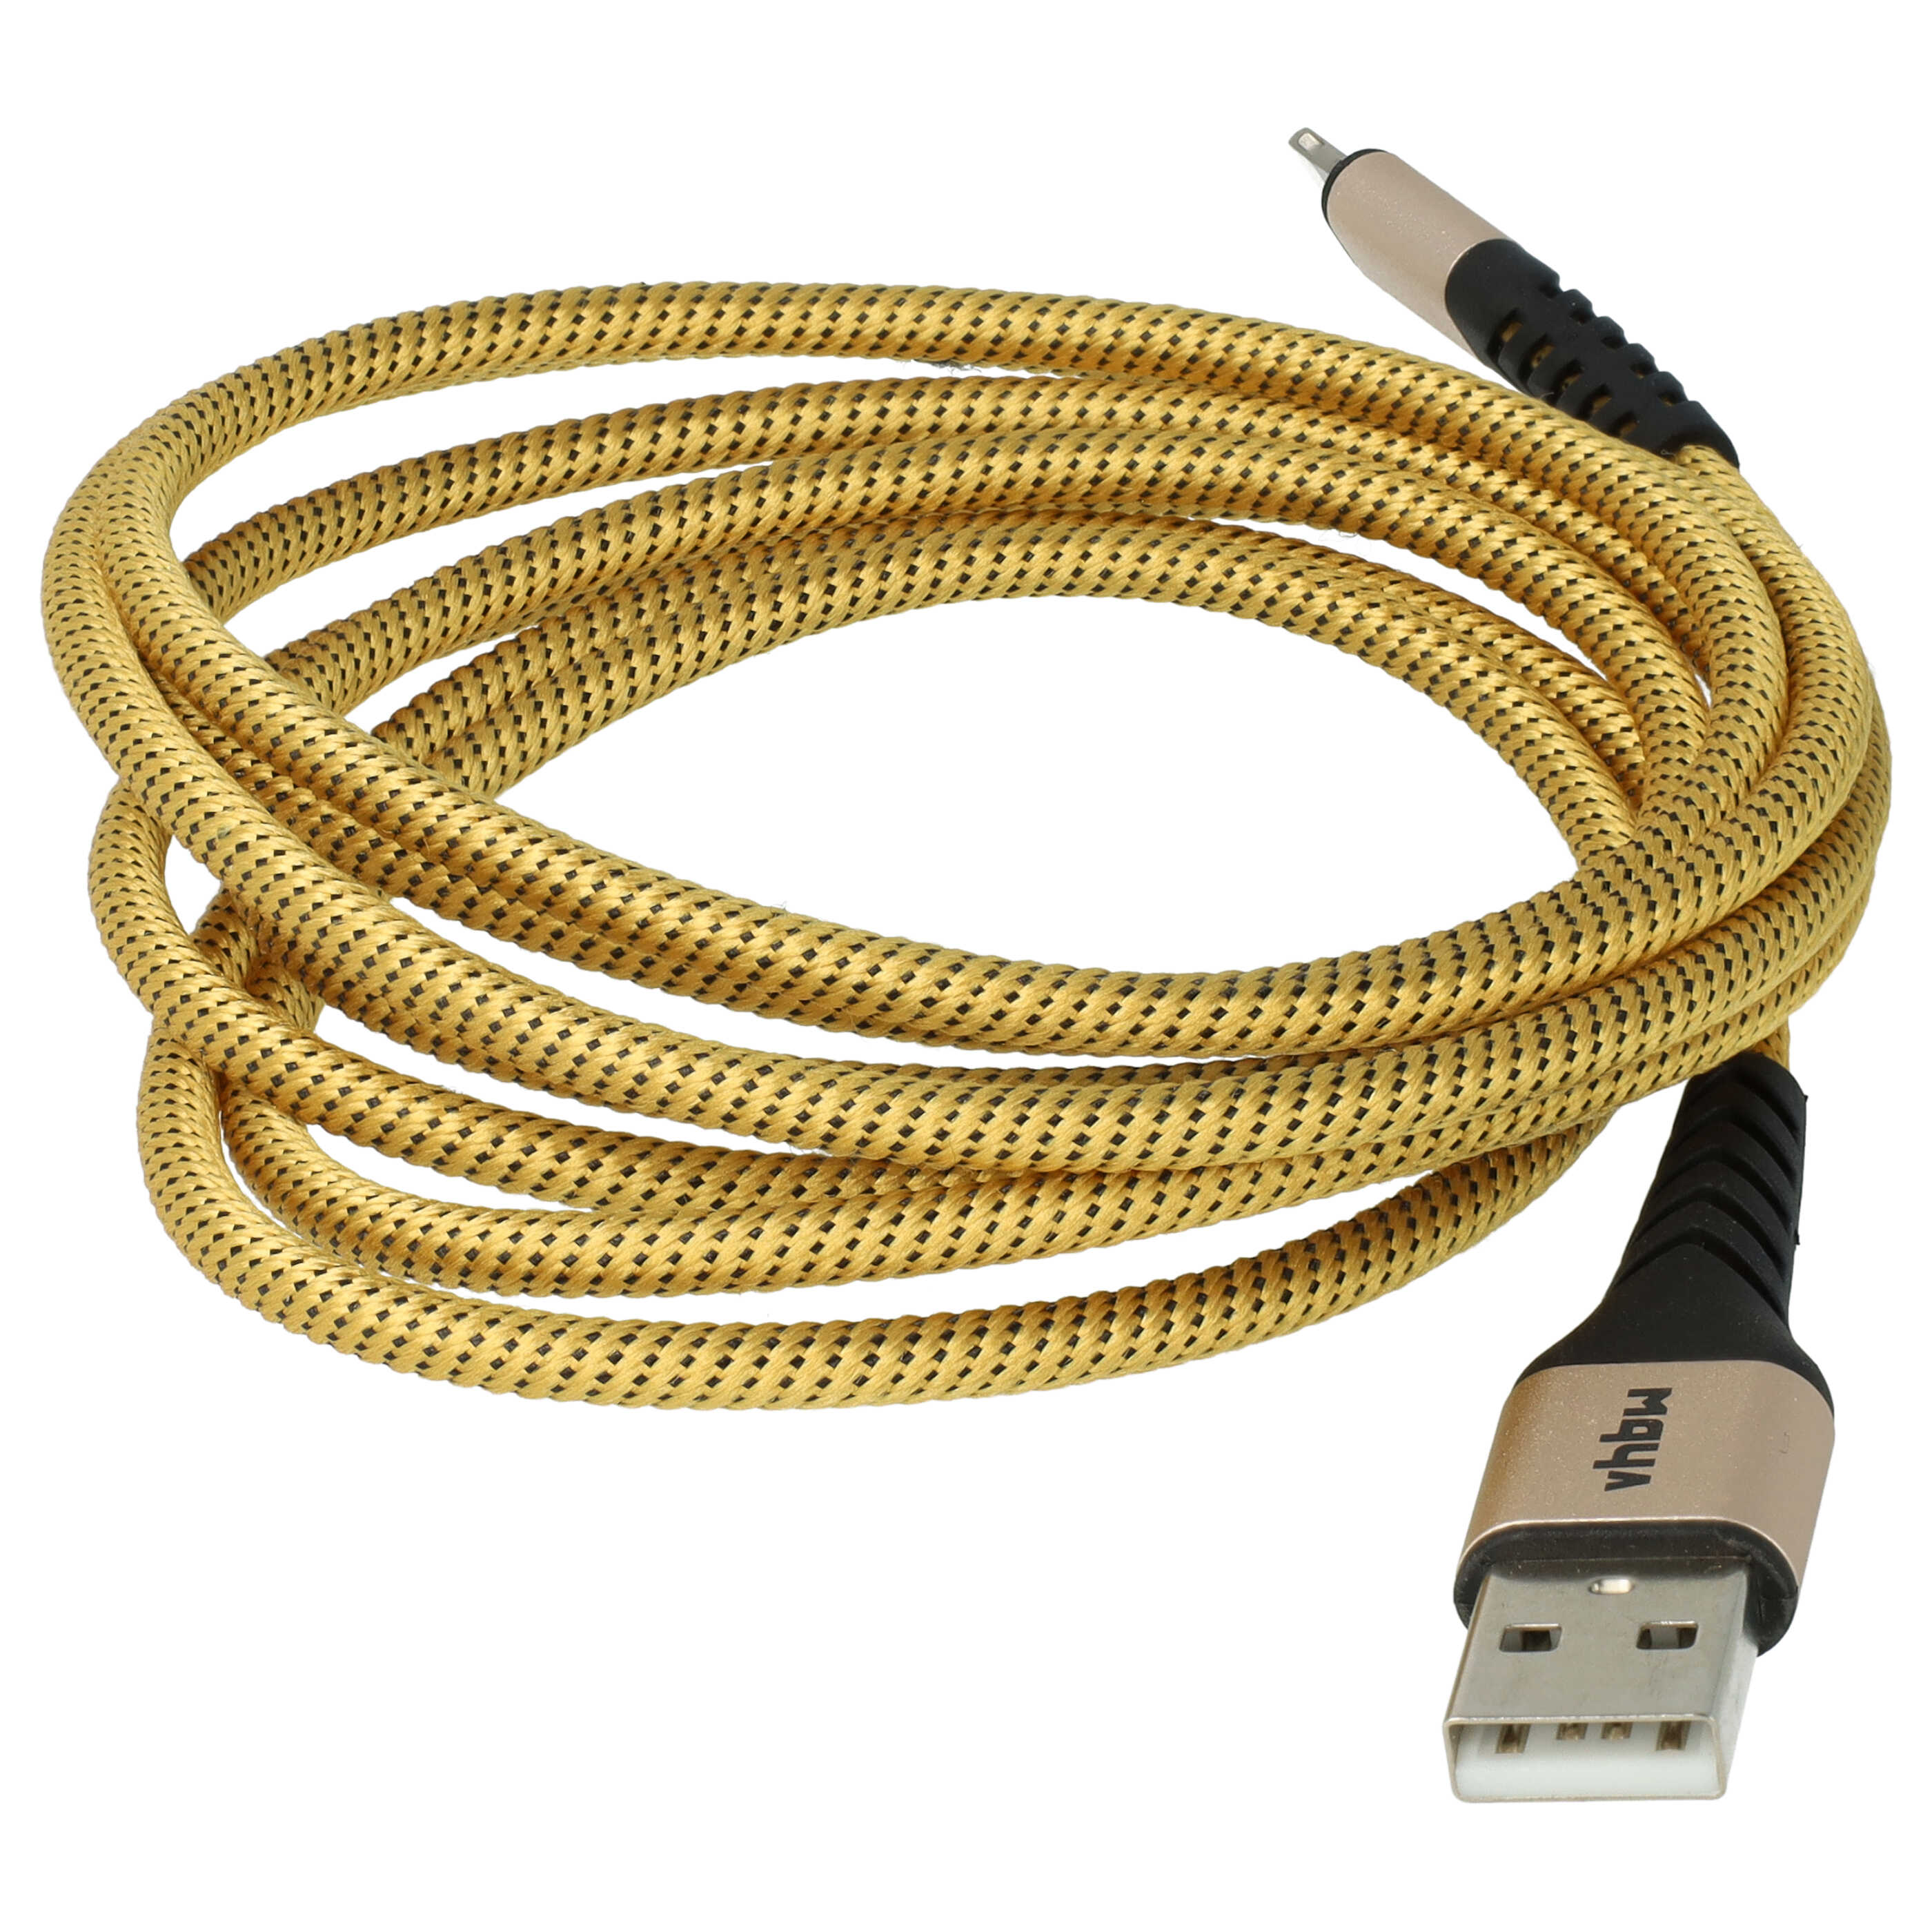 Cable lightning a USB A para dispositivos Apple iOS Apple AirPods - negro / amarillo, 180 cm